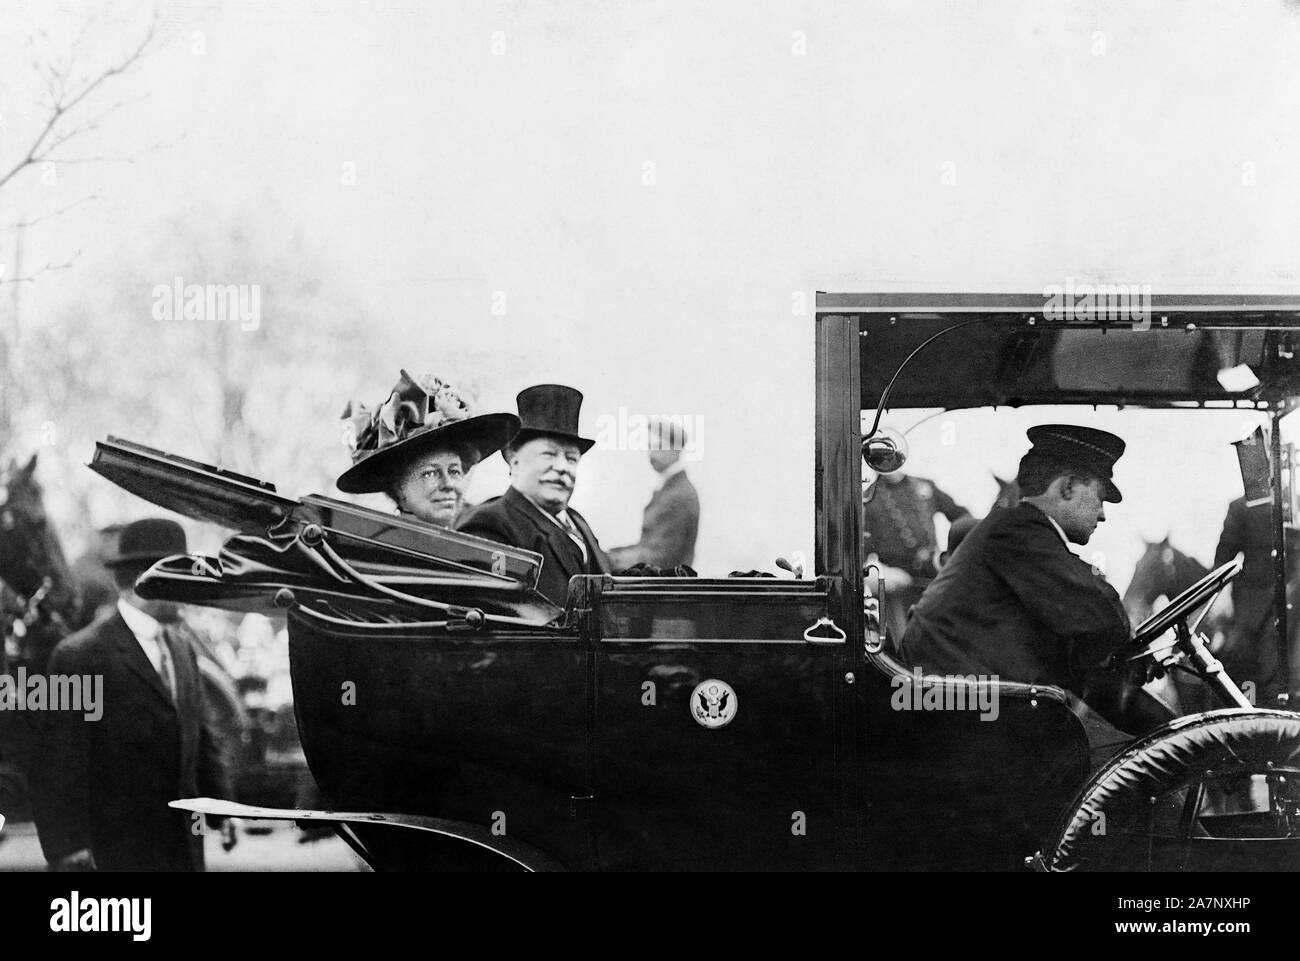 Le Président américain William Howard Taft et son épouse, la Première Dame Helen Herron Taft, assis à l'arrière de Maison Blanche Automobile décapotable avec toit, Washington, D.C., USA, photo de Barnet McFee Clinedinst, 1909 Banque D'Images